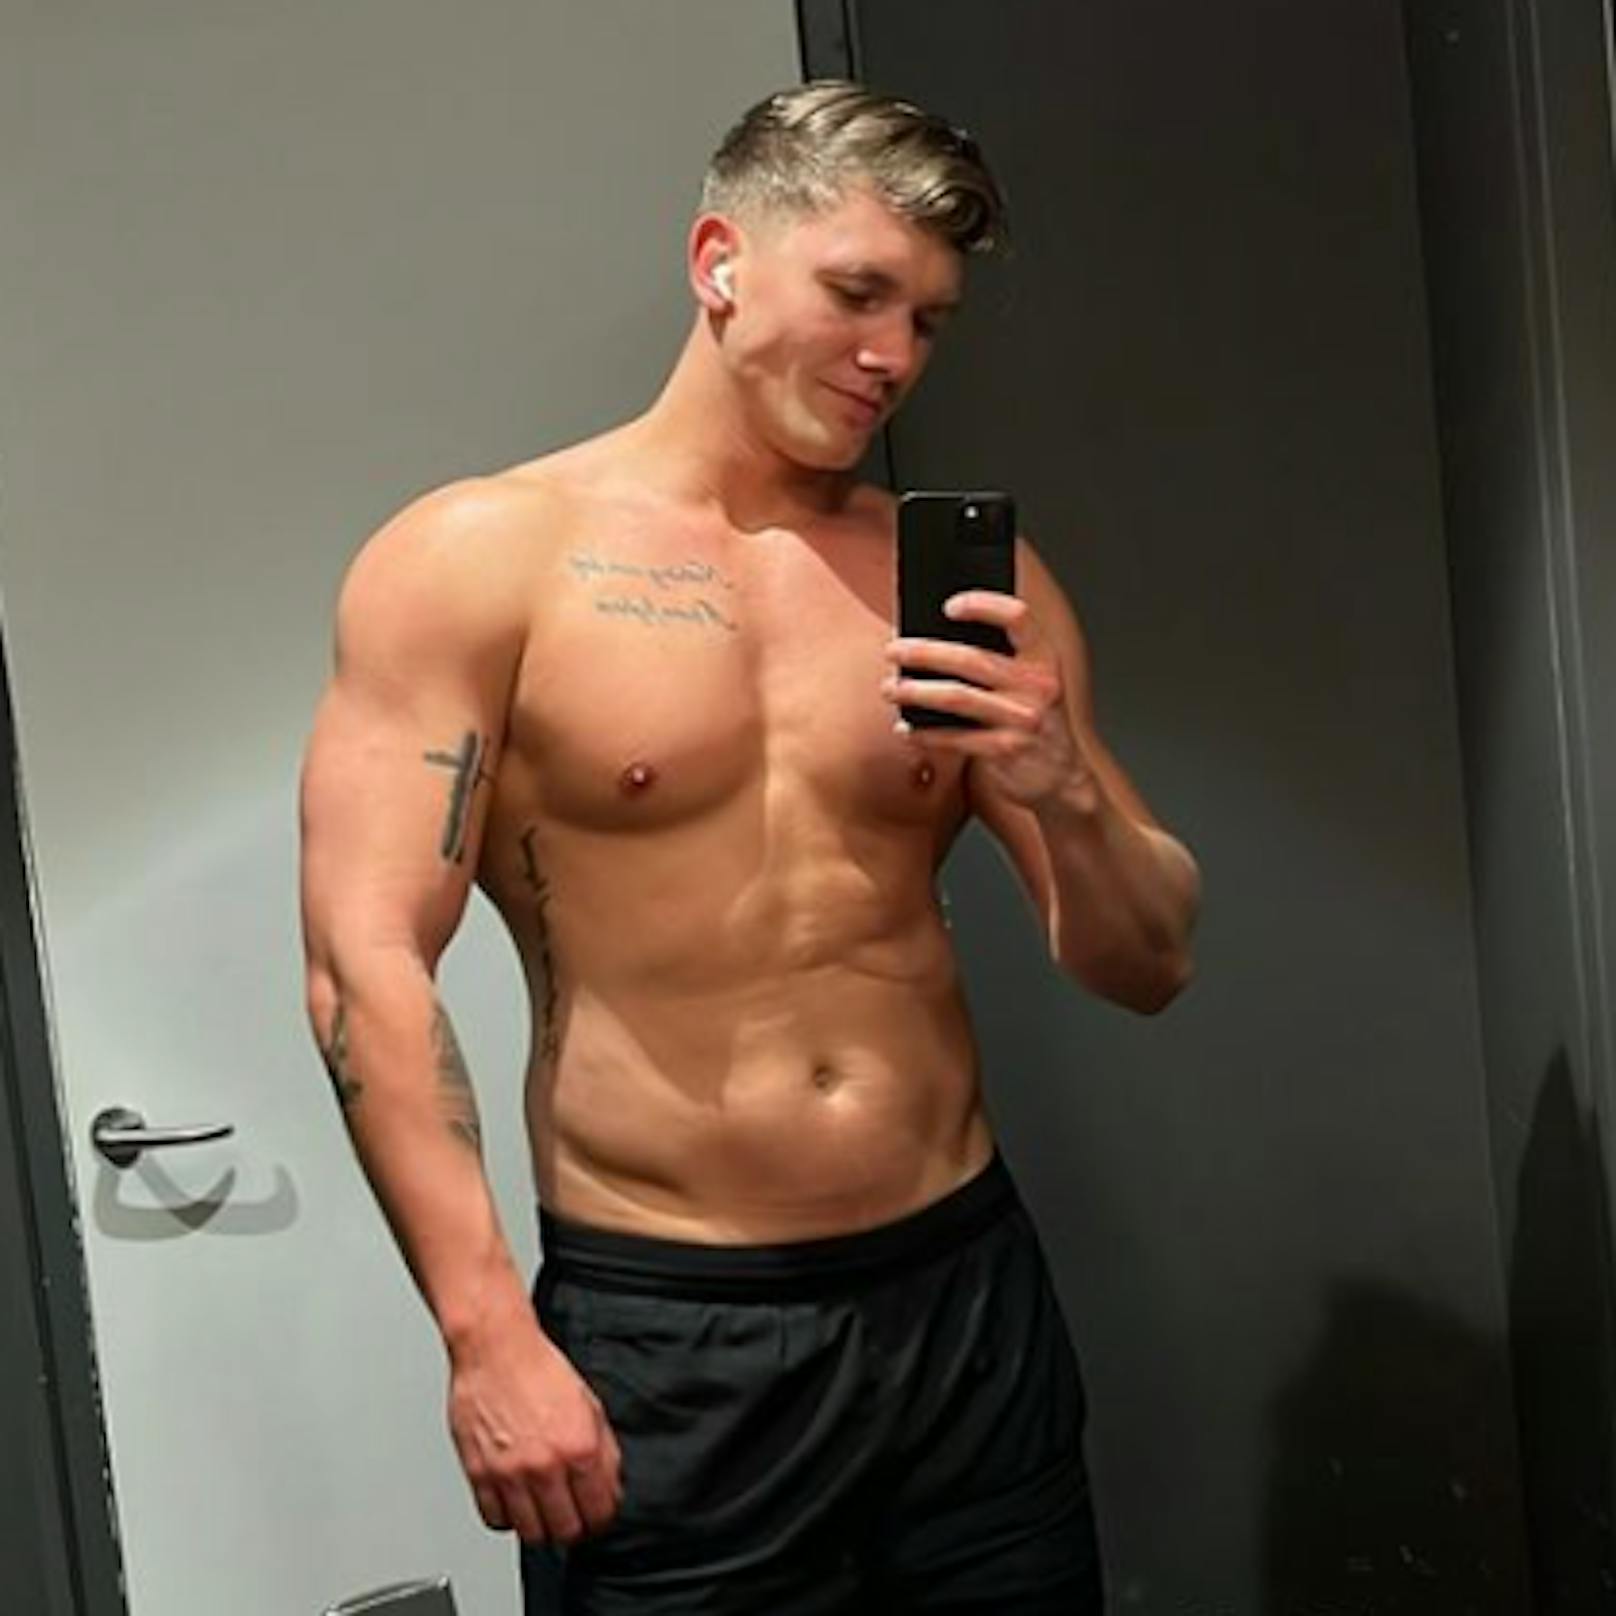 Auf Instagram teilt Roman Schindler seine Body-Transformation. Trotz Top-Body steckt er sich Ziele und motiviert damit Andere.